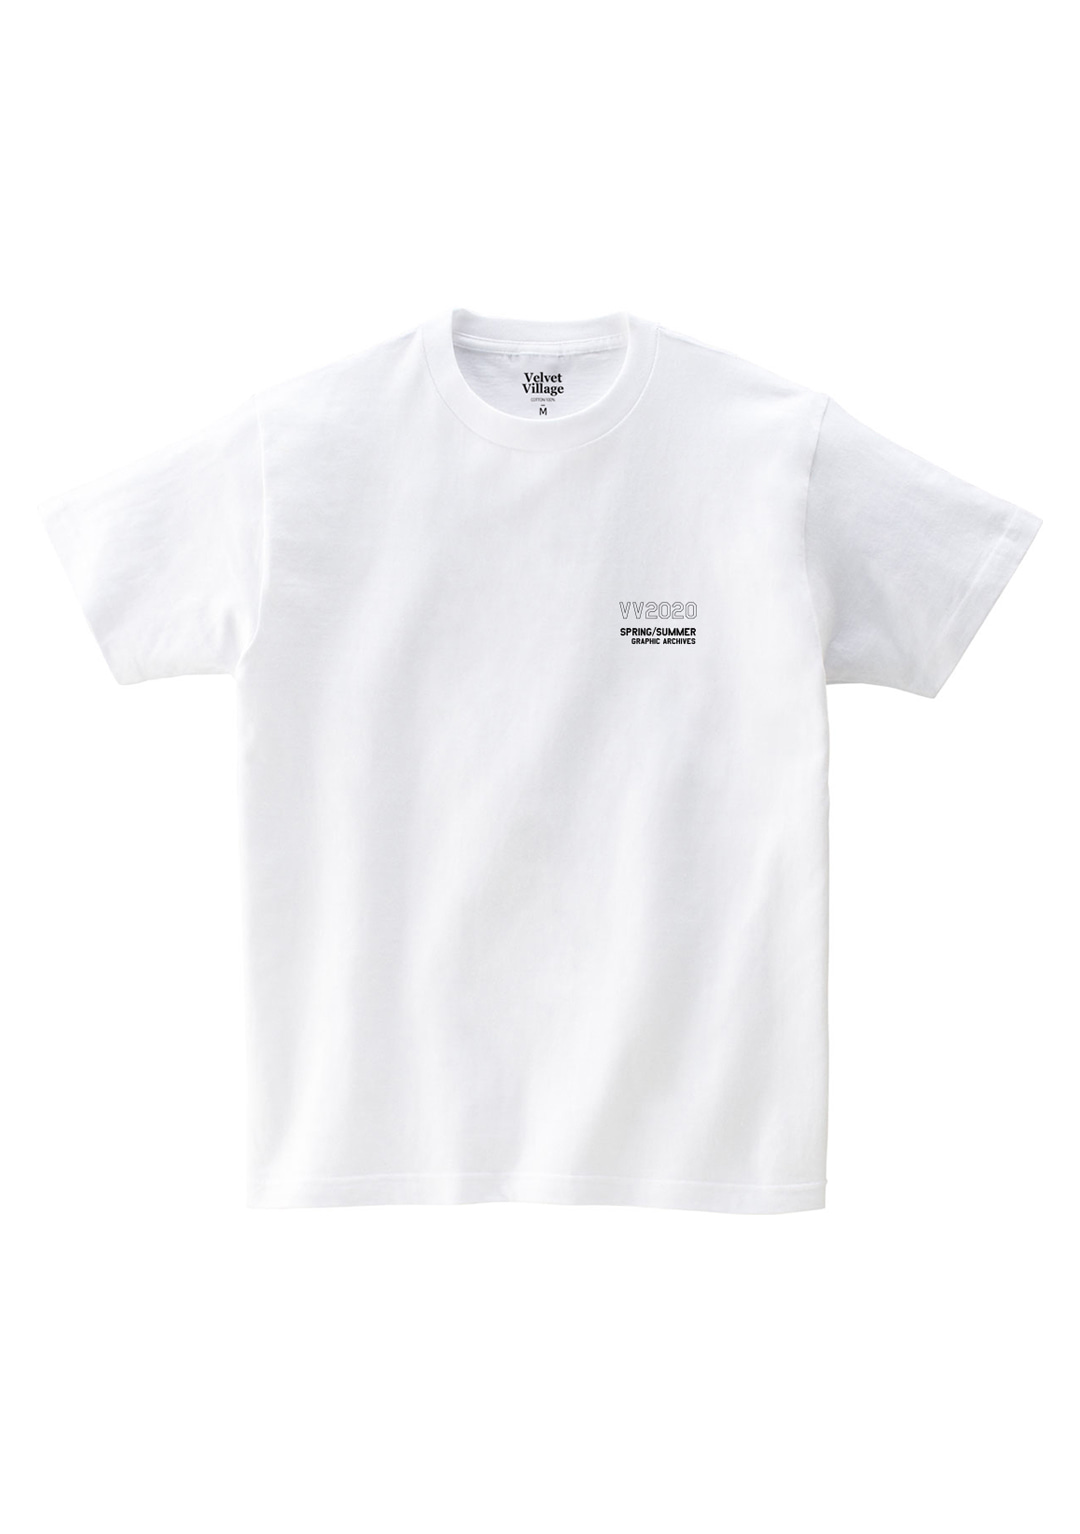 VV2020 T-shirt (White)